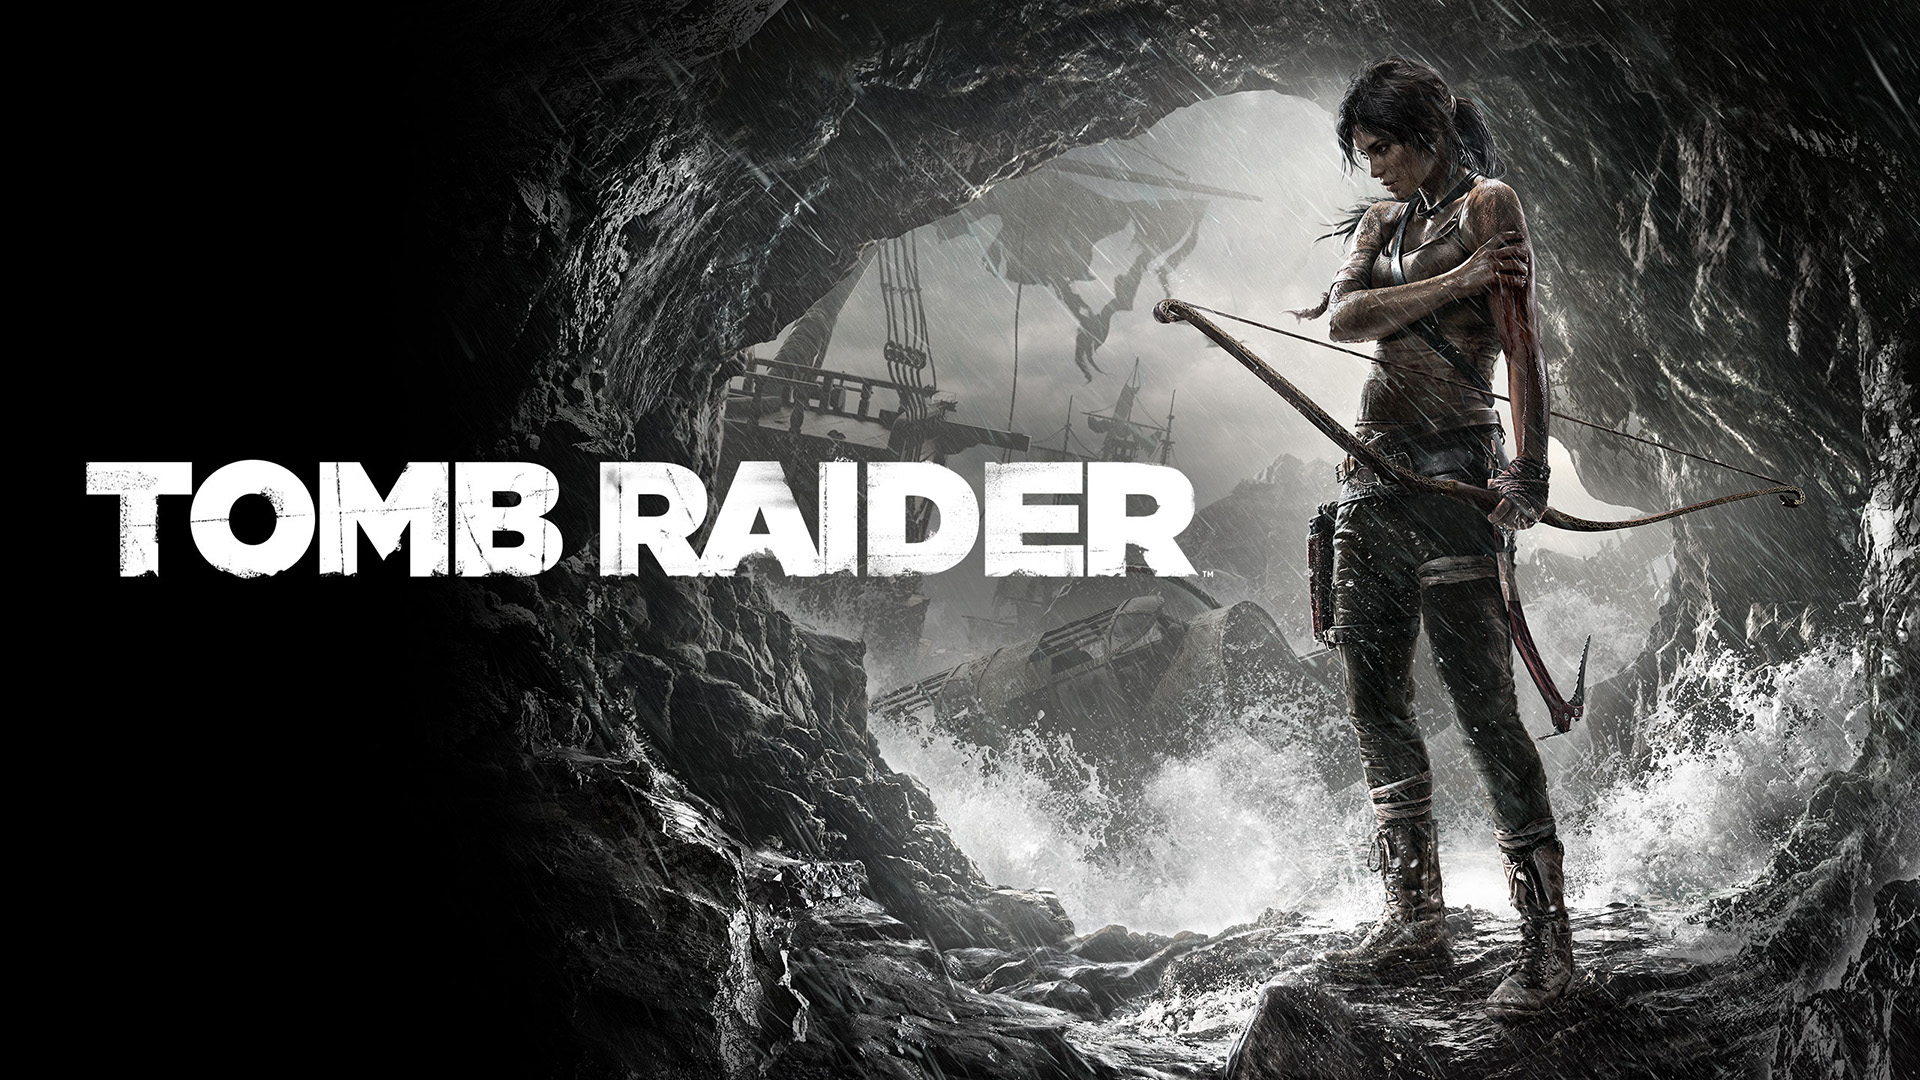 ซีรีส์ Tomb Raider มียอดขายมากกว่า 88 ล้านชุด